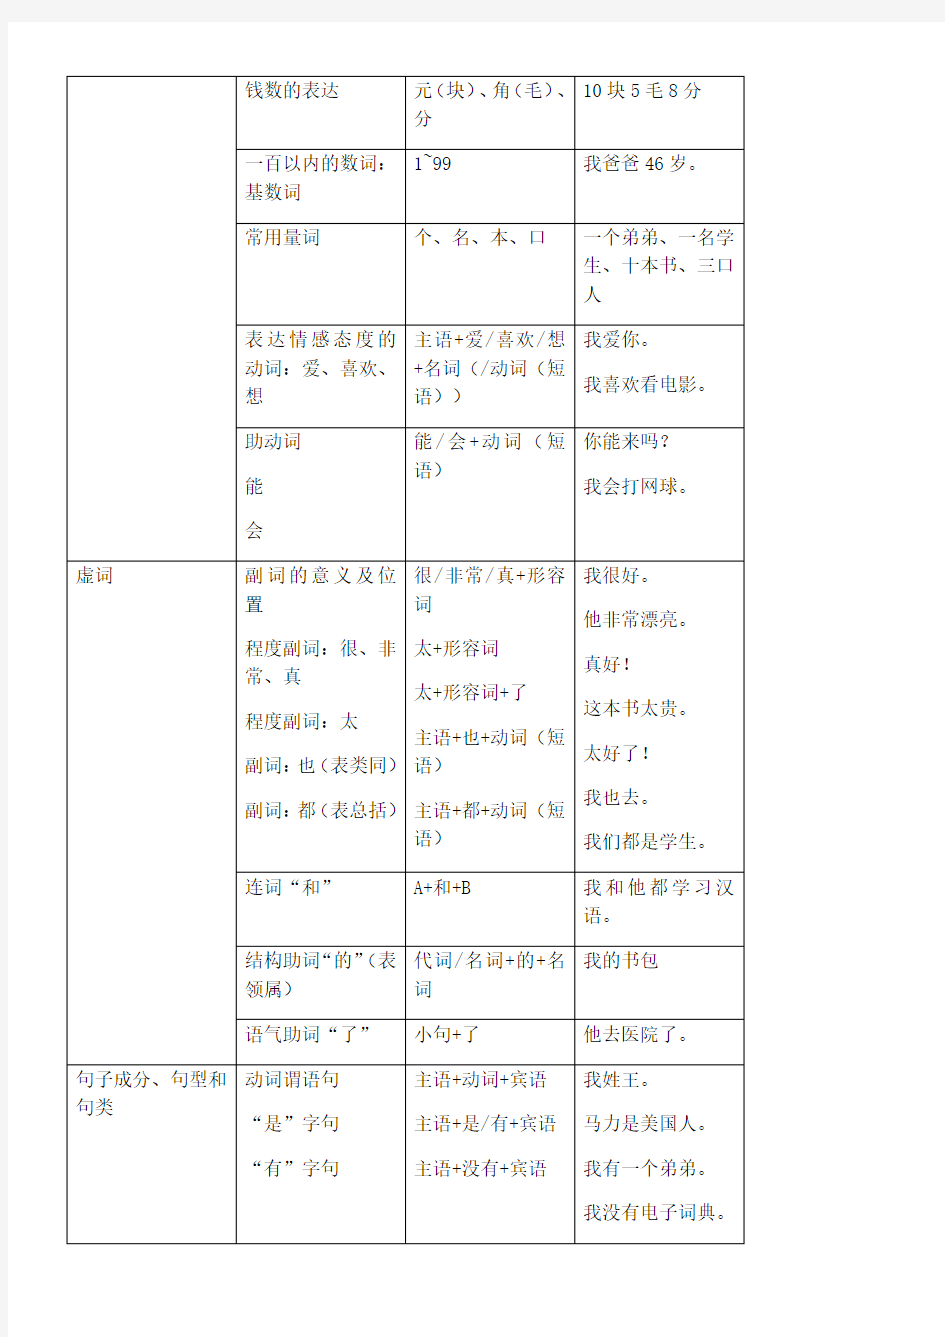 常用汉语语法分级表格模板版